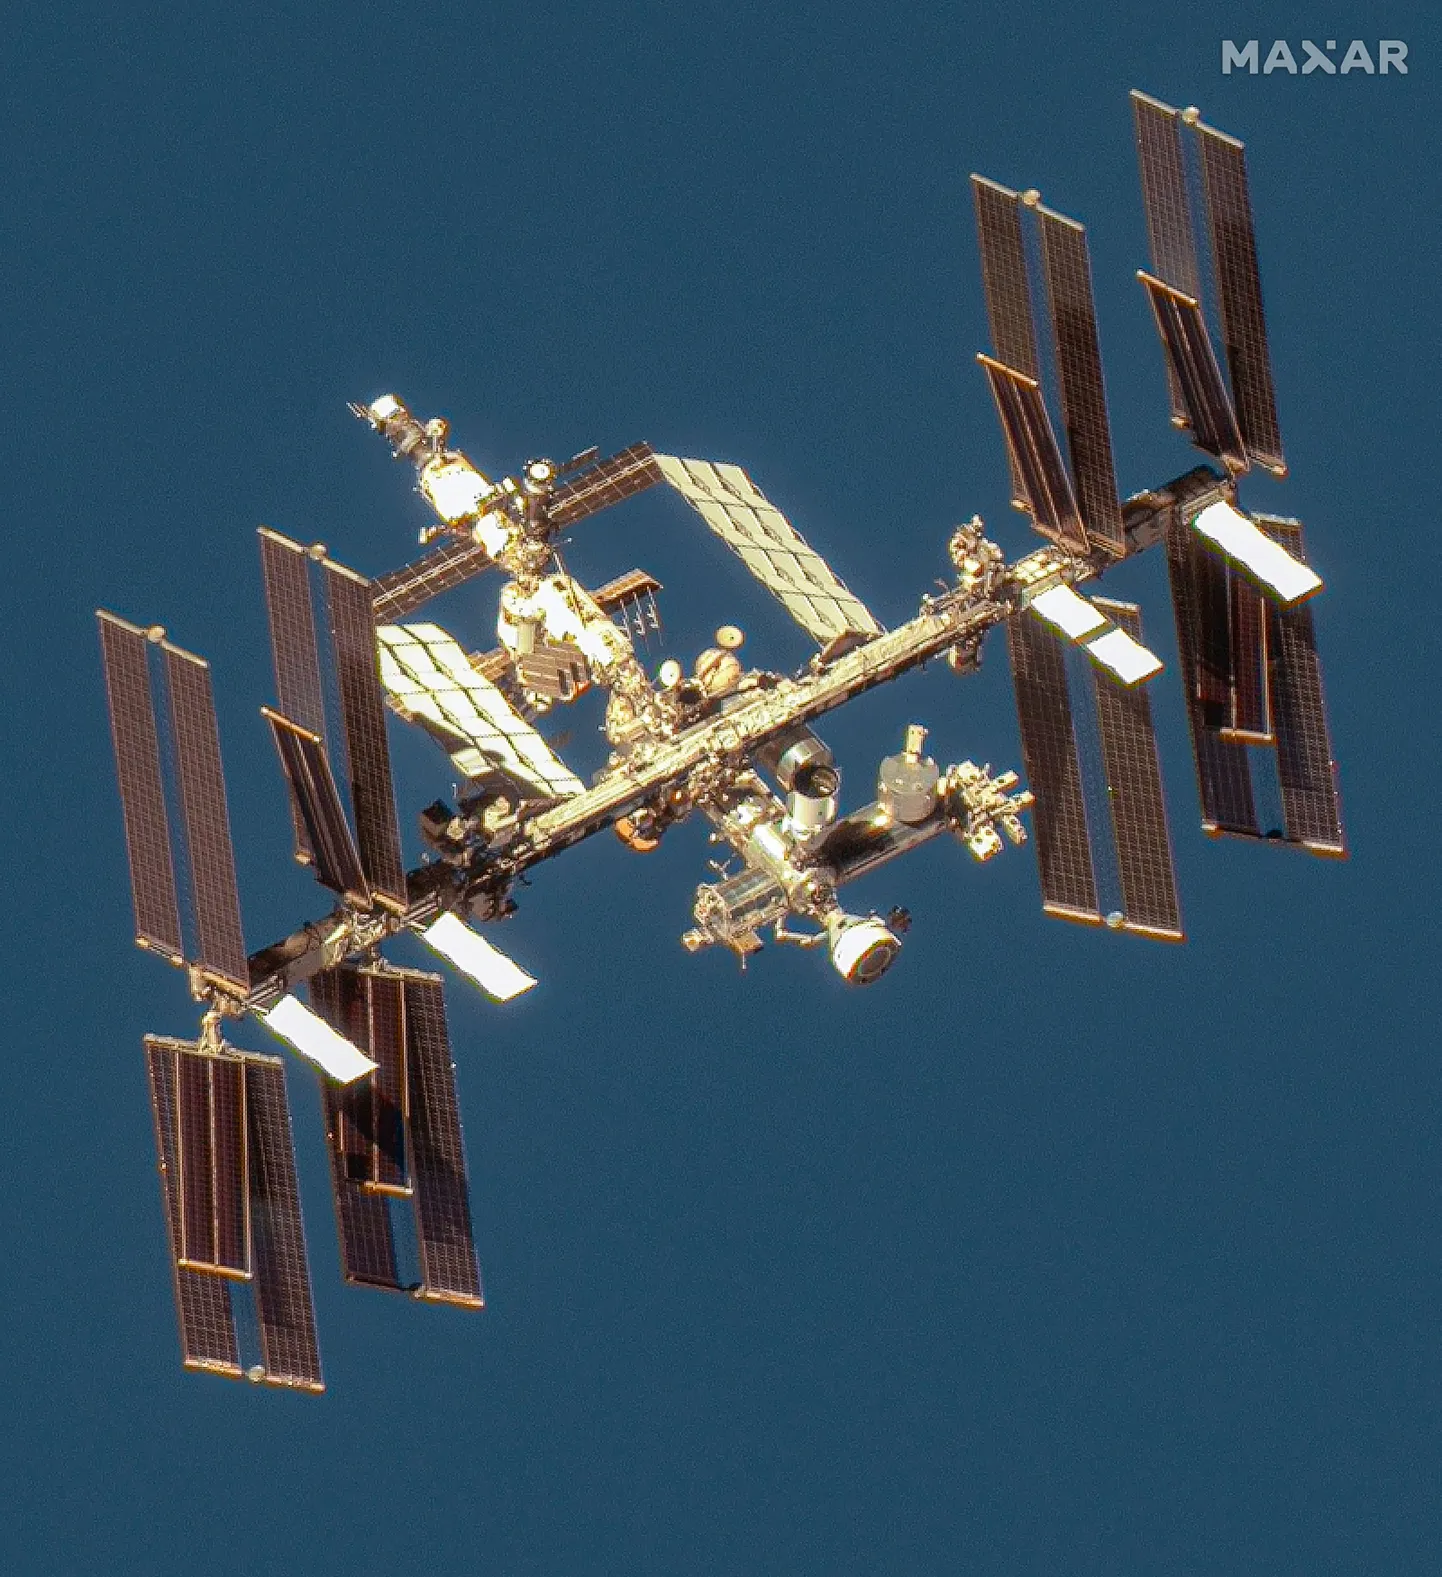 Sellel Maxari tehtud satelliidifotol on näha ISS-i koos Boeing Starlineri kosmoselaevaga, mis on põkkunud jaama Harmony mooduliga. Kogu kosmosejaam prantsatab rohkem kui viie aasta pärast Vaiksesse ookeani, olles enne suures osas atmosfääris ära põlenud.